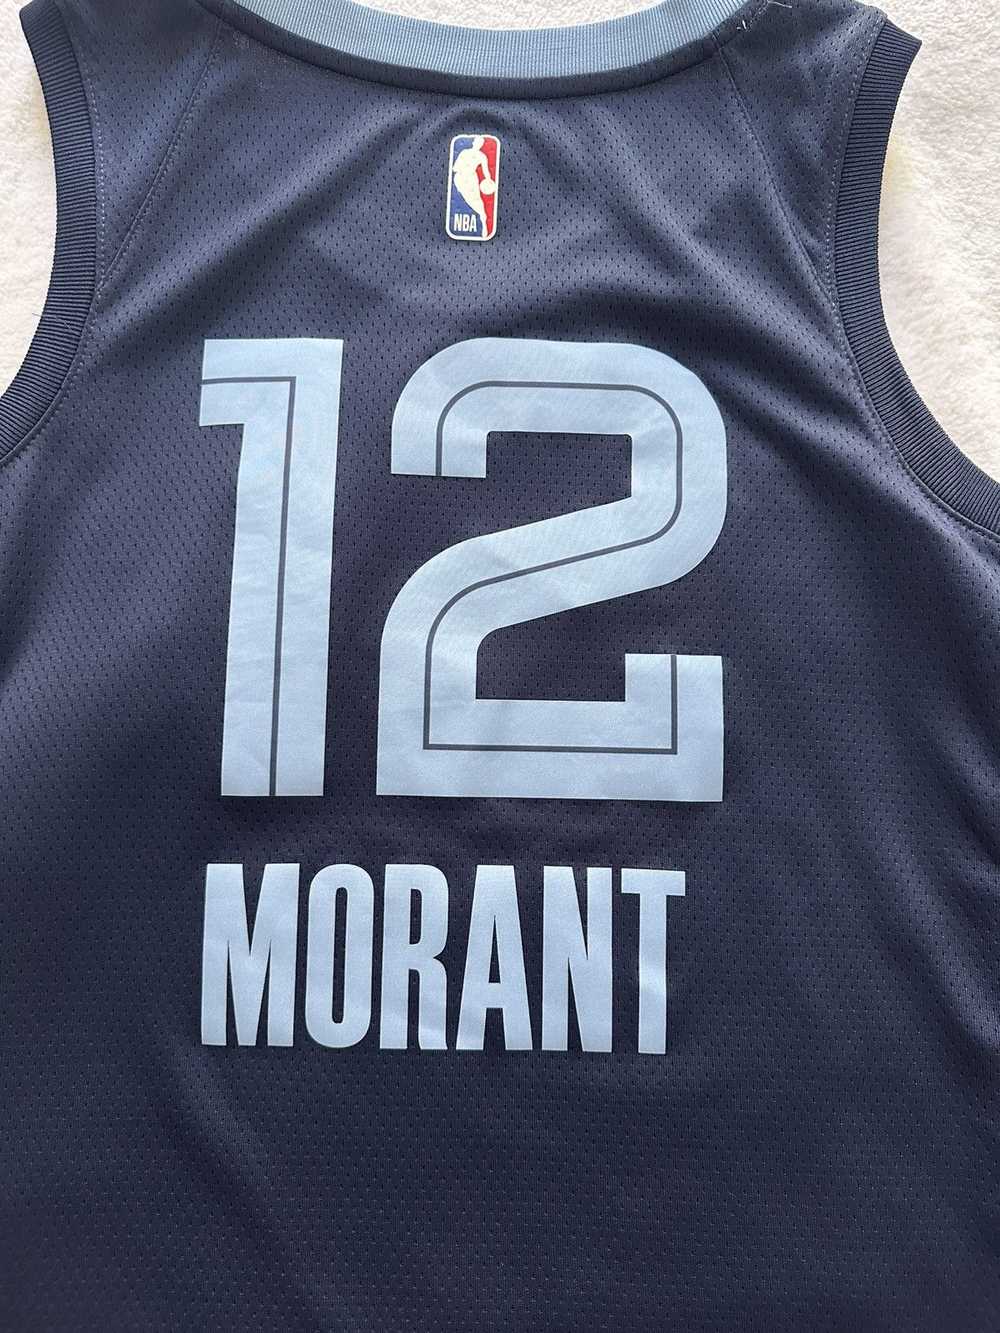 Jersey × NBA × Sportswear Ja Morant Grizzlies Jer… - image 5